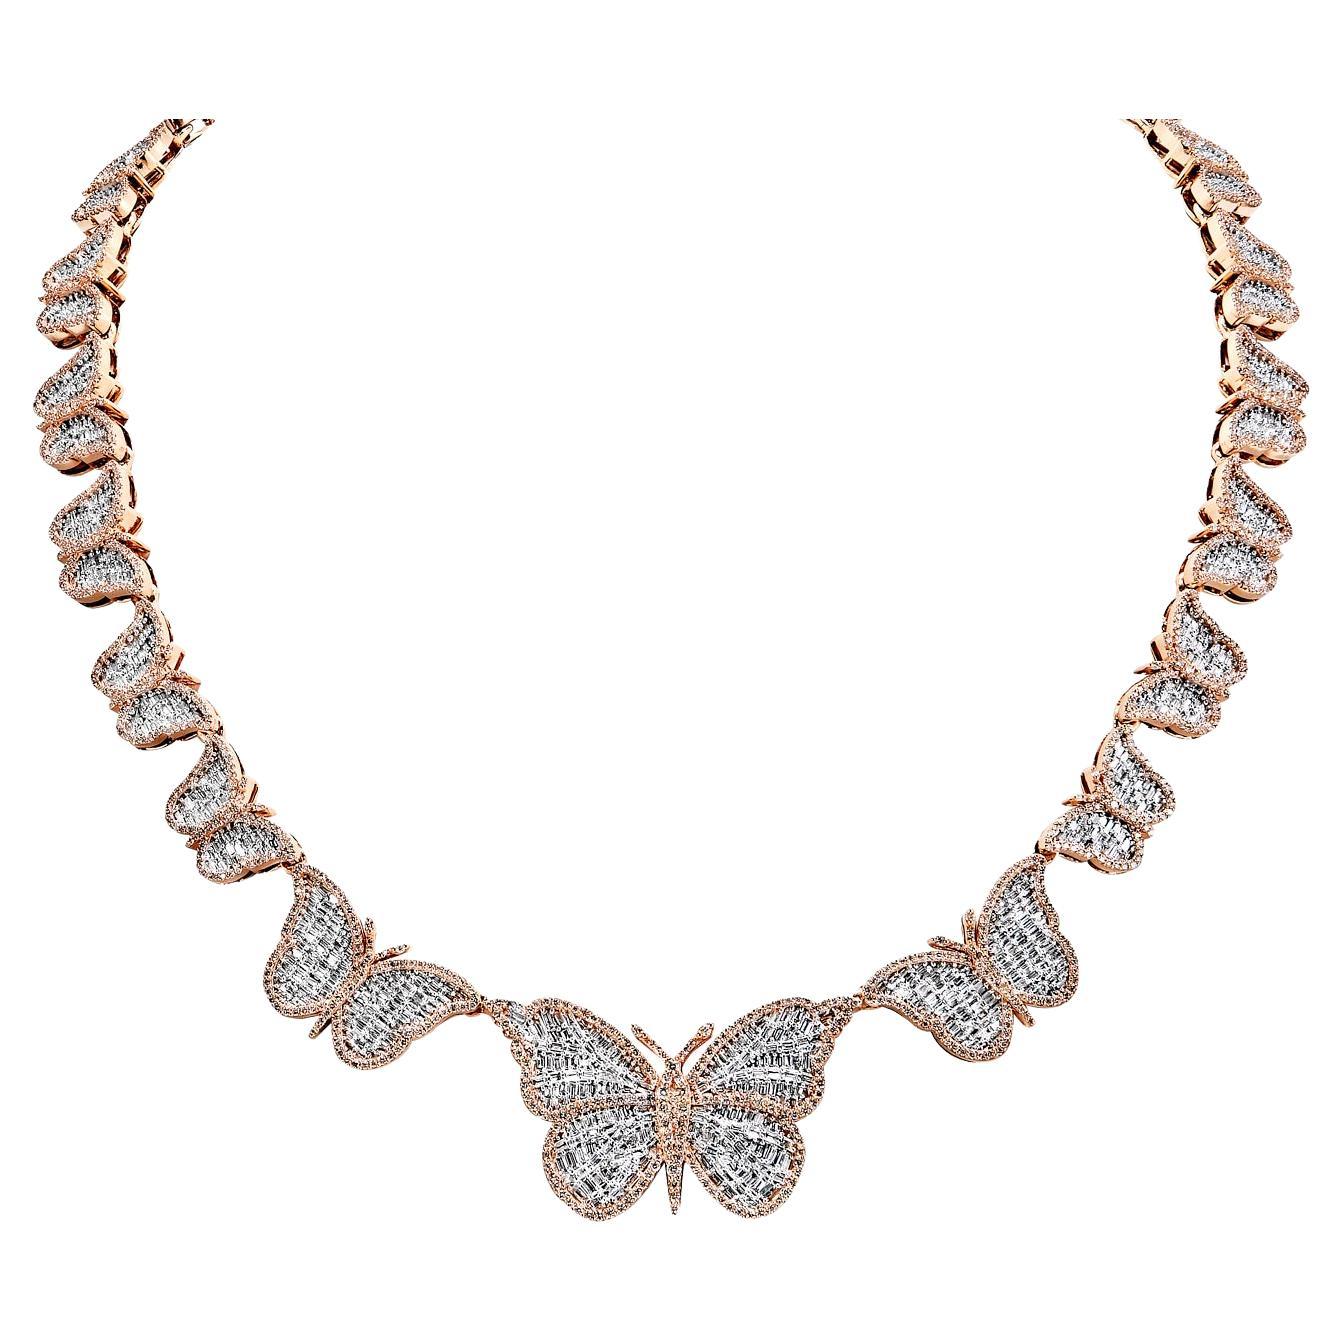 13 Carat Combine Mix Shape Diamond Necklace Certified